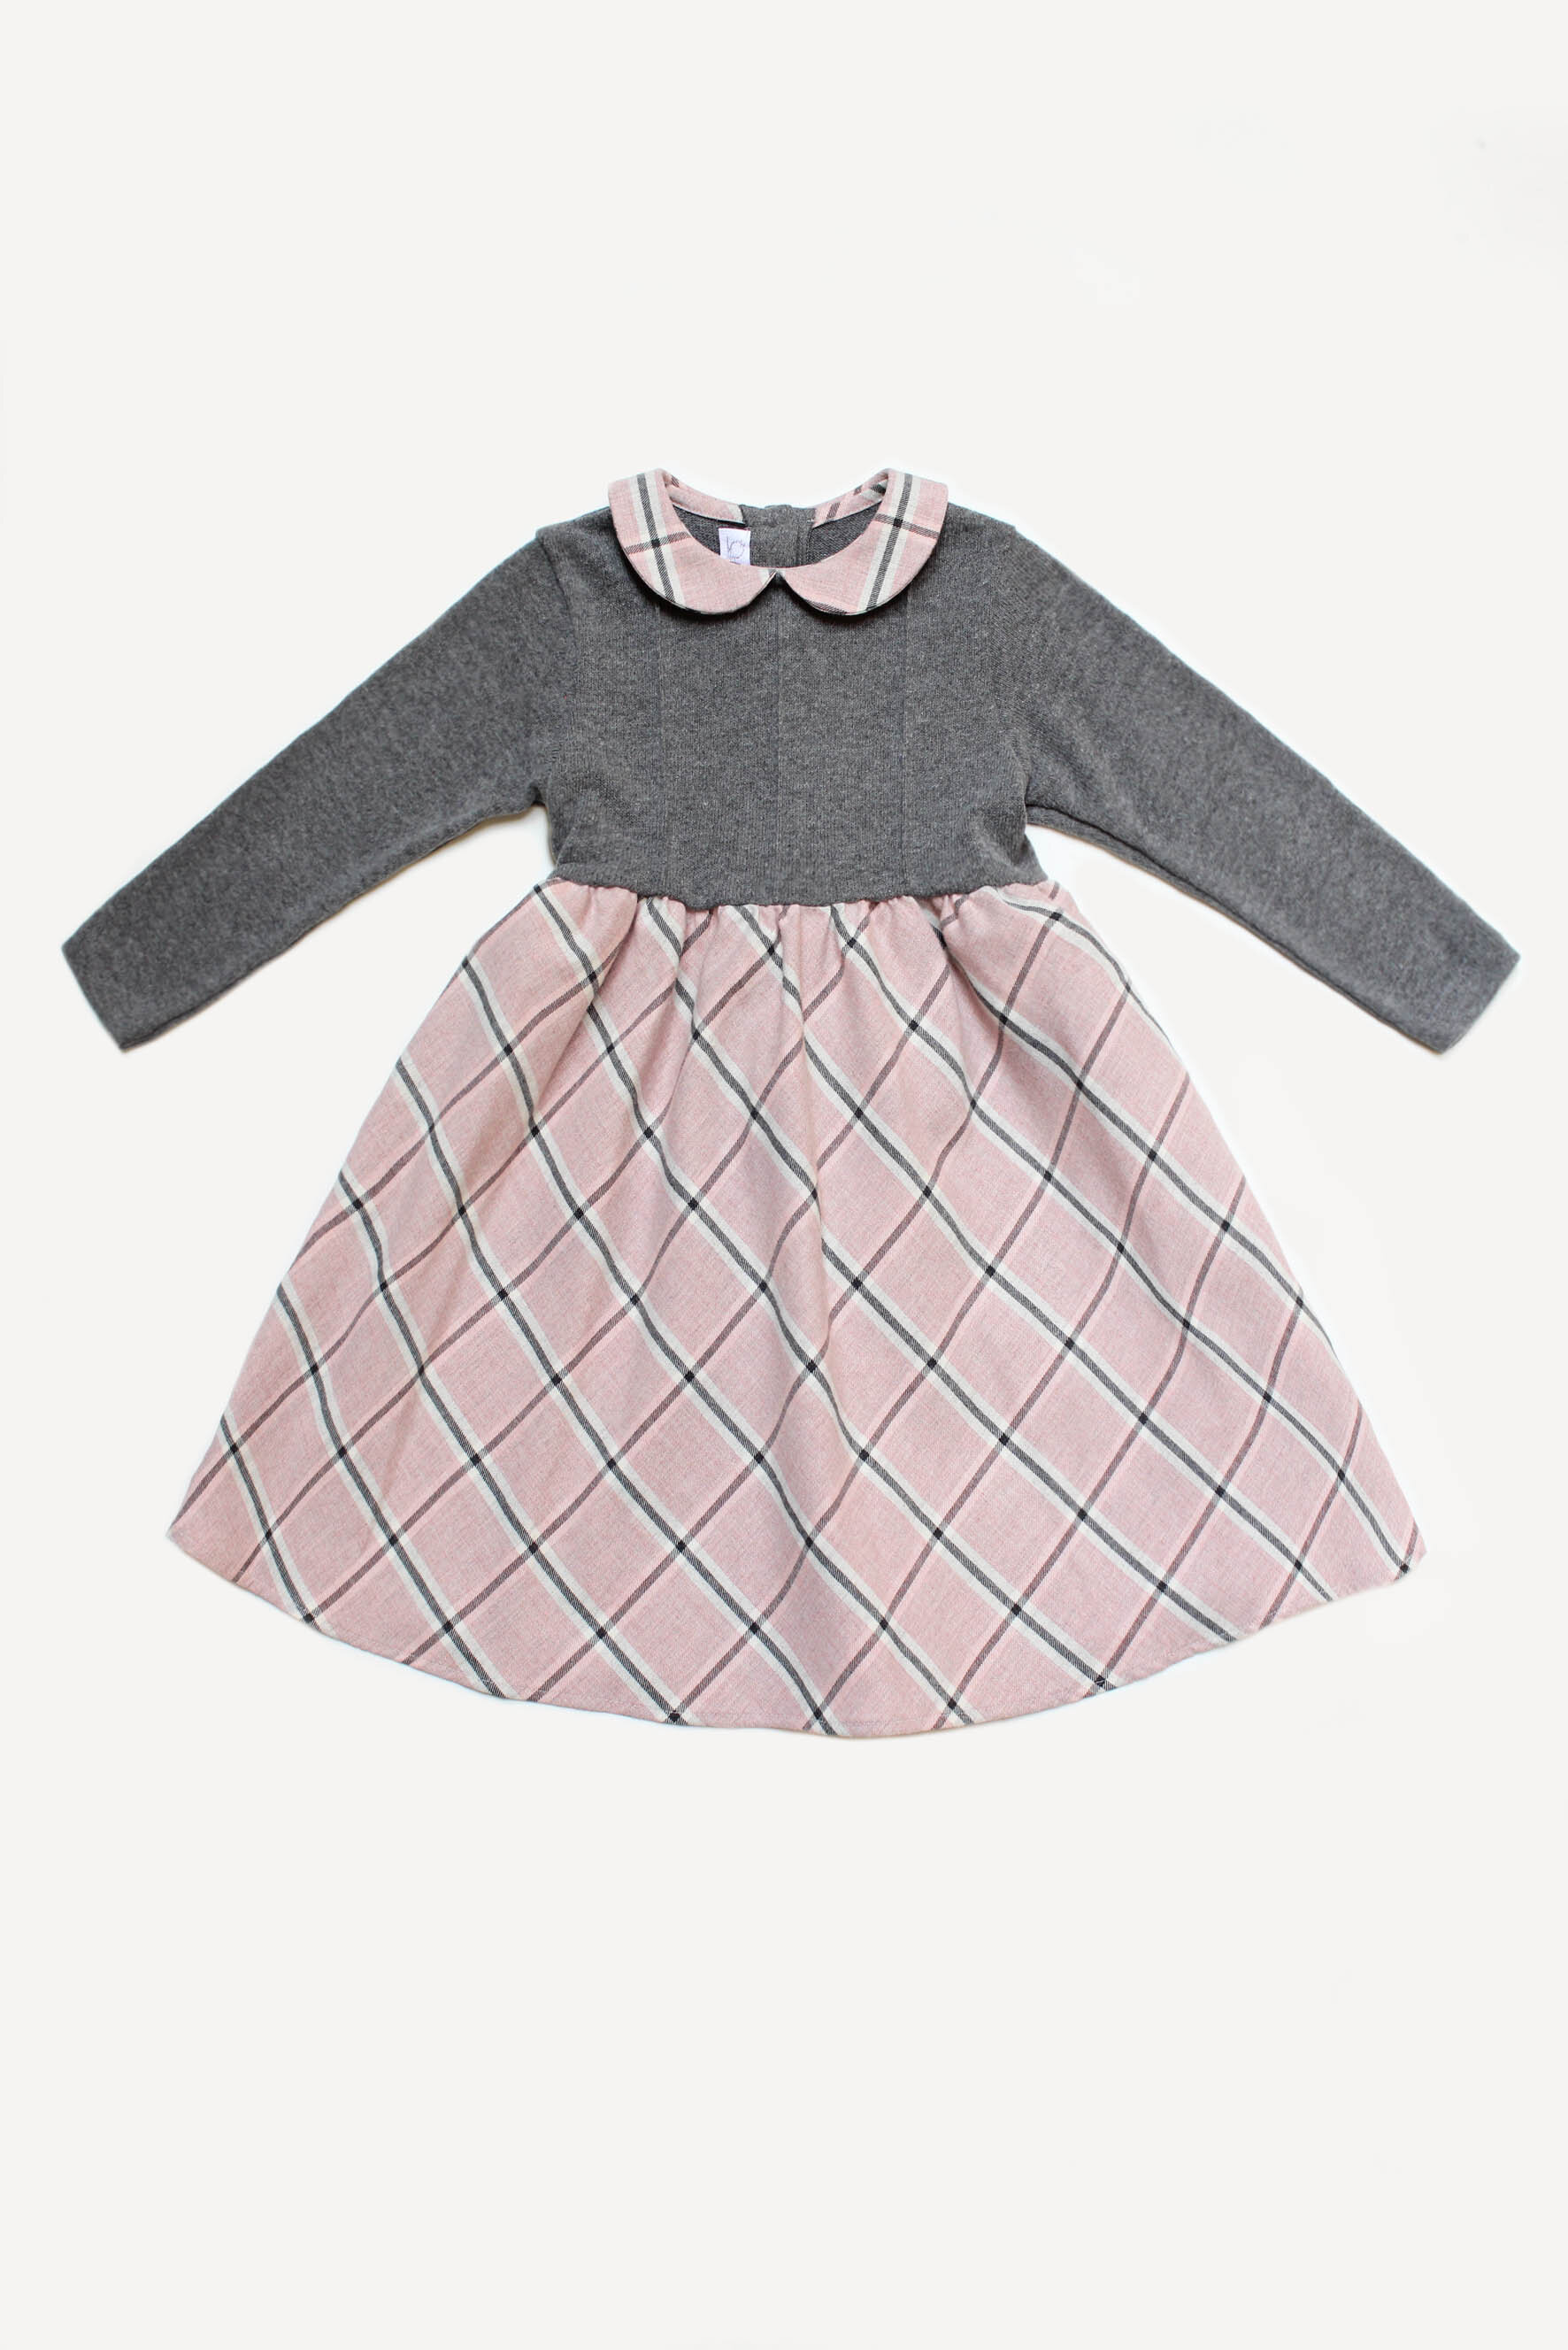 Vestito bambina in grigio e scozzese rosa